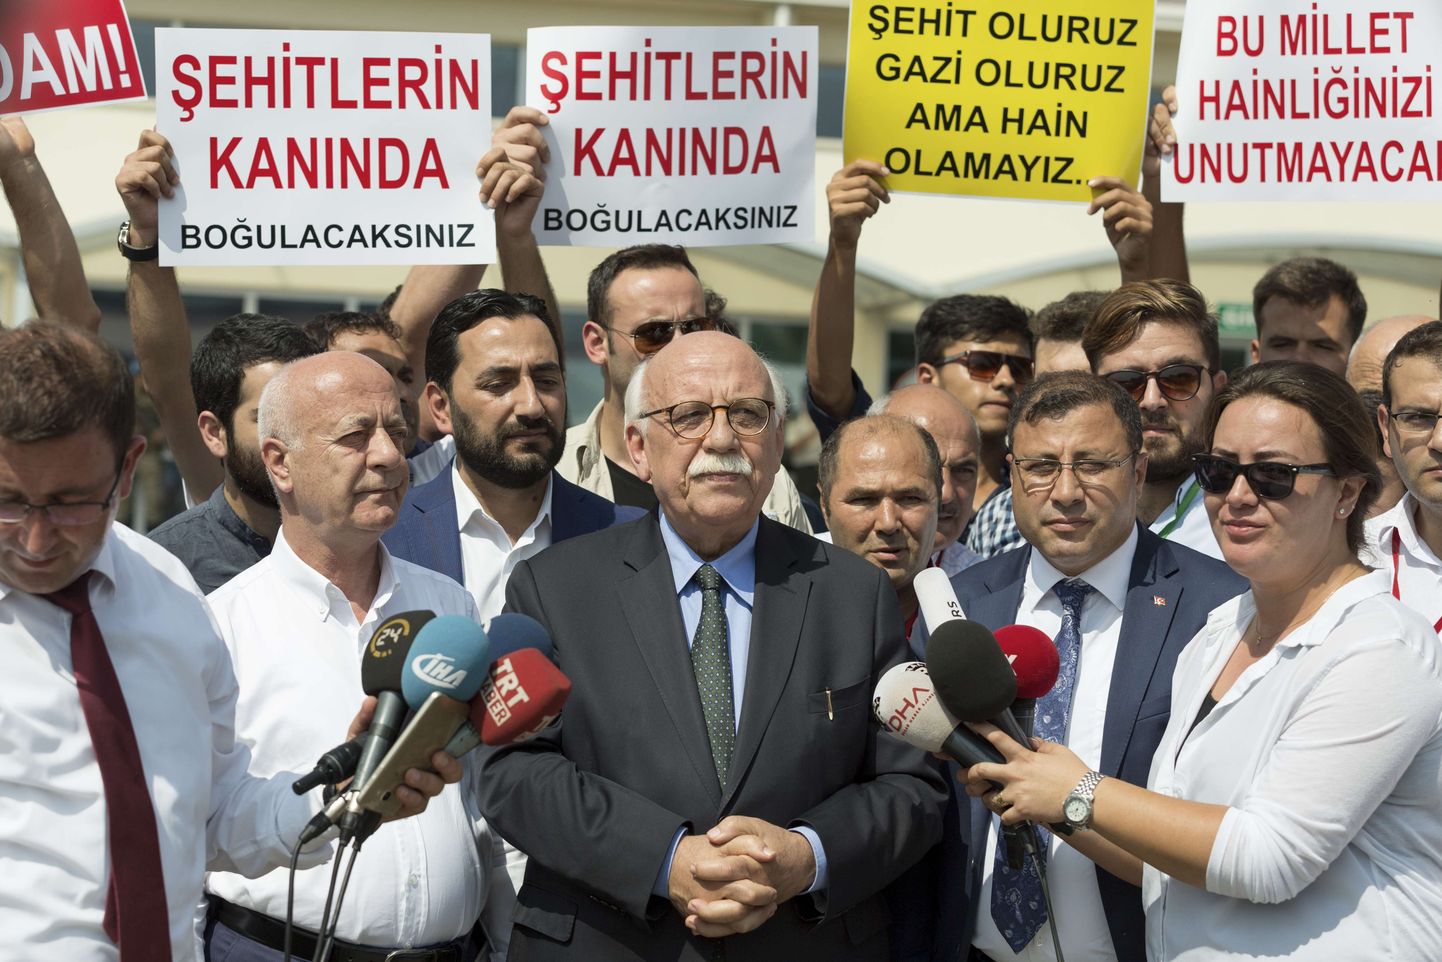 Meediatöötajate vabastamist on nõudnud teiste seas endine haridusminister Nabi Avci.